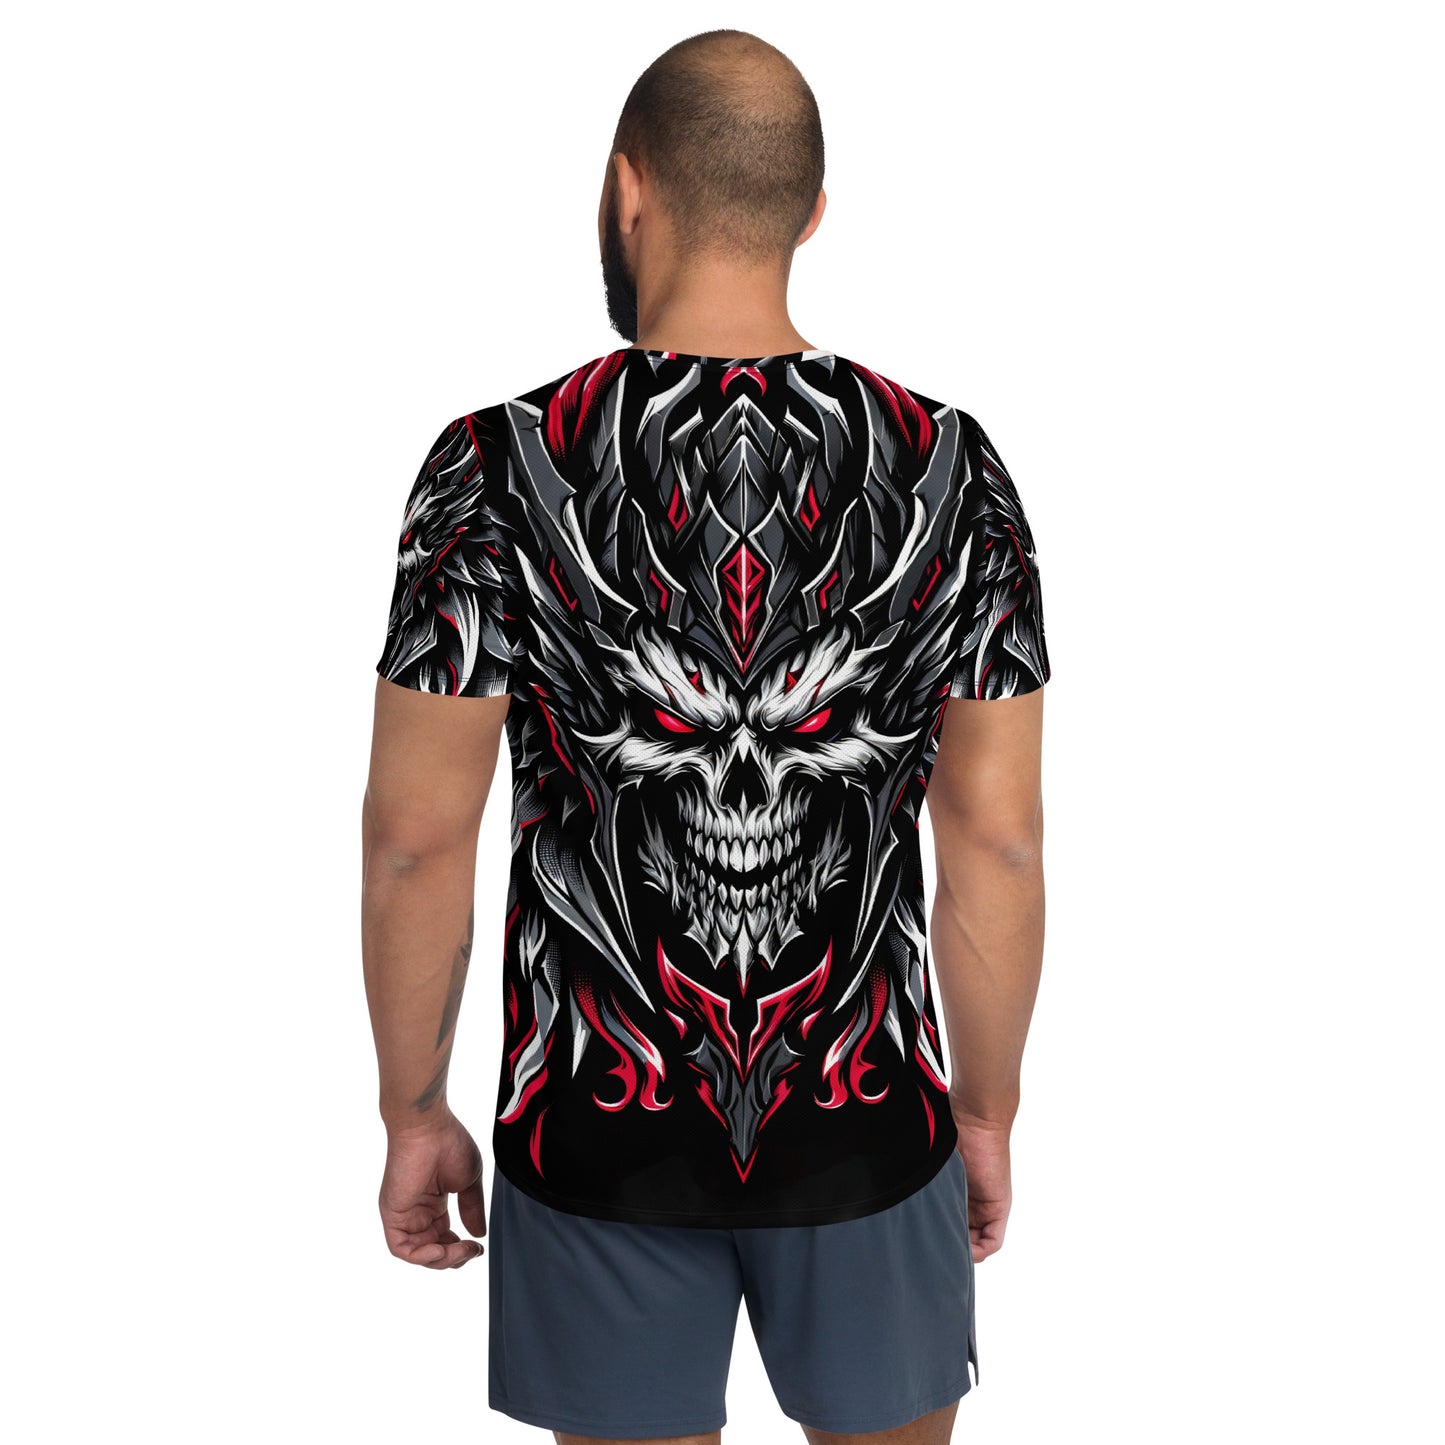 Death Head Men's Athletic T-shirt